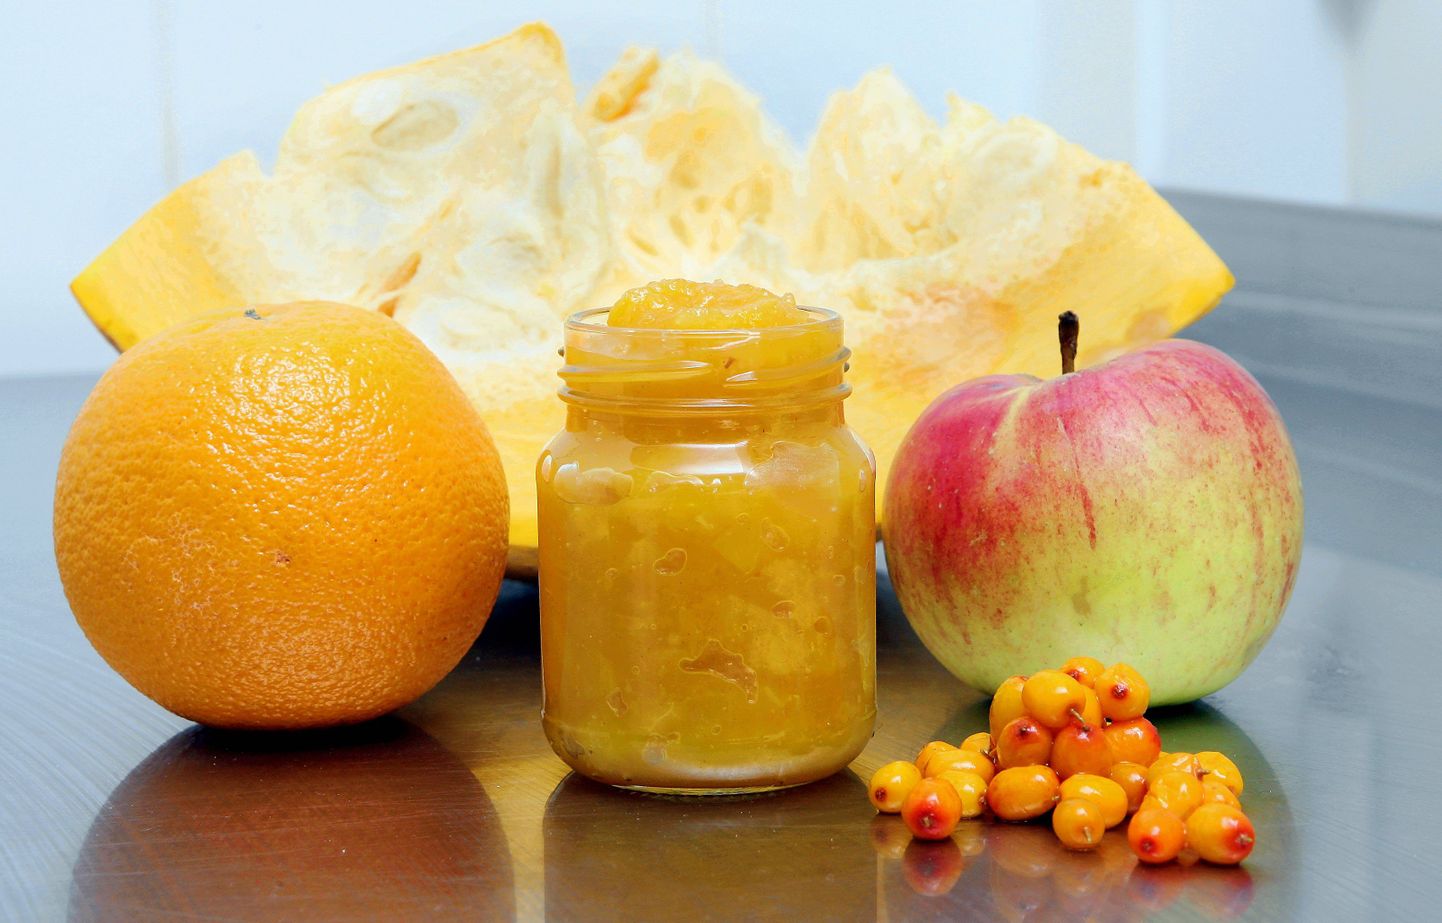 Olustveres toimunud hoidistemessil sai peapreemia hoidis "Kuldne sügis" mille valmistasid Olustvere õpilased. Võidutöö valmistamiseks vajalikud komponendid: õun, kõrvits, astelpaju, apelsin.